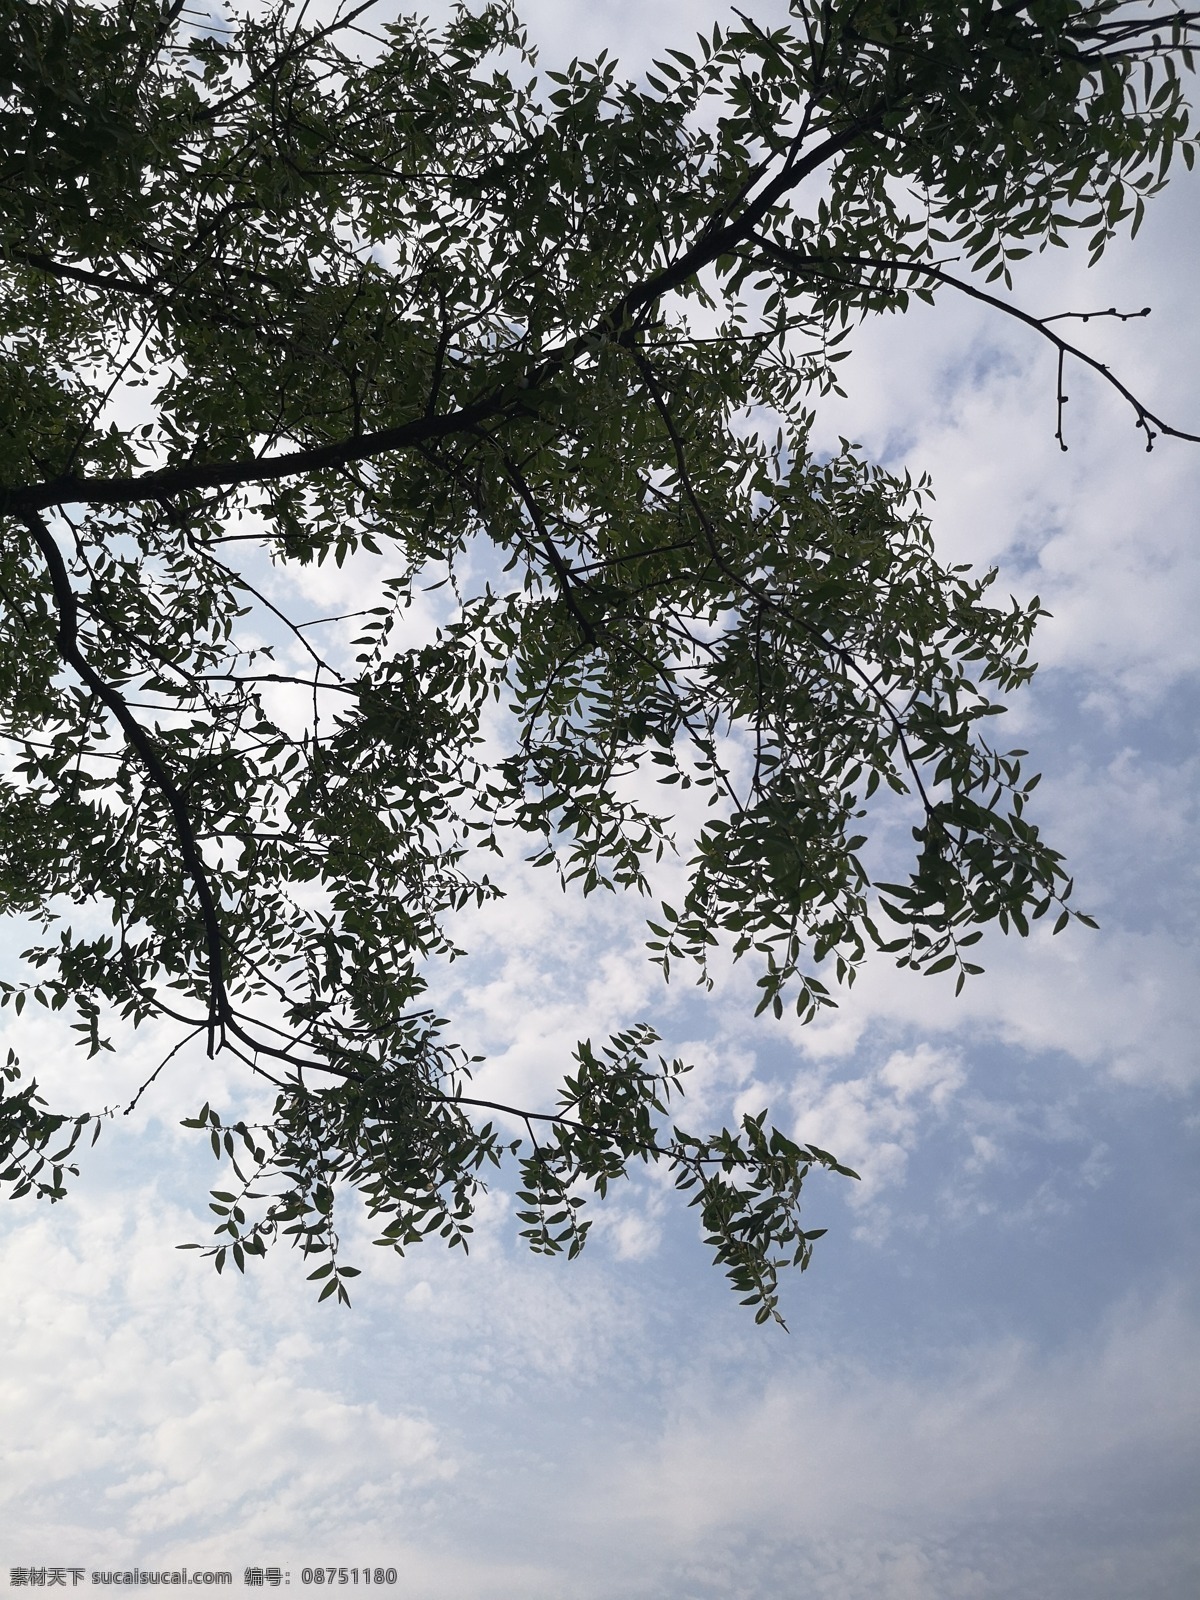 透过 绿叶 看 蓝天 天空 蓝色 云朵 树叶 风景摄影 背景 风景 自然景观 自然风景